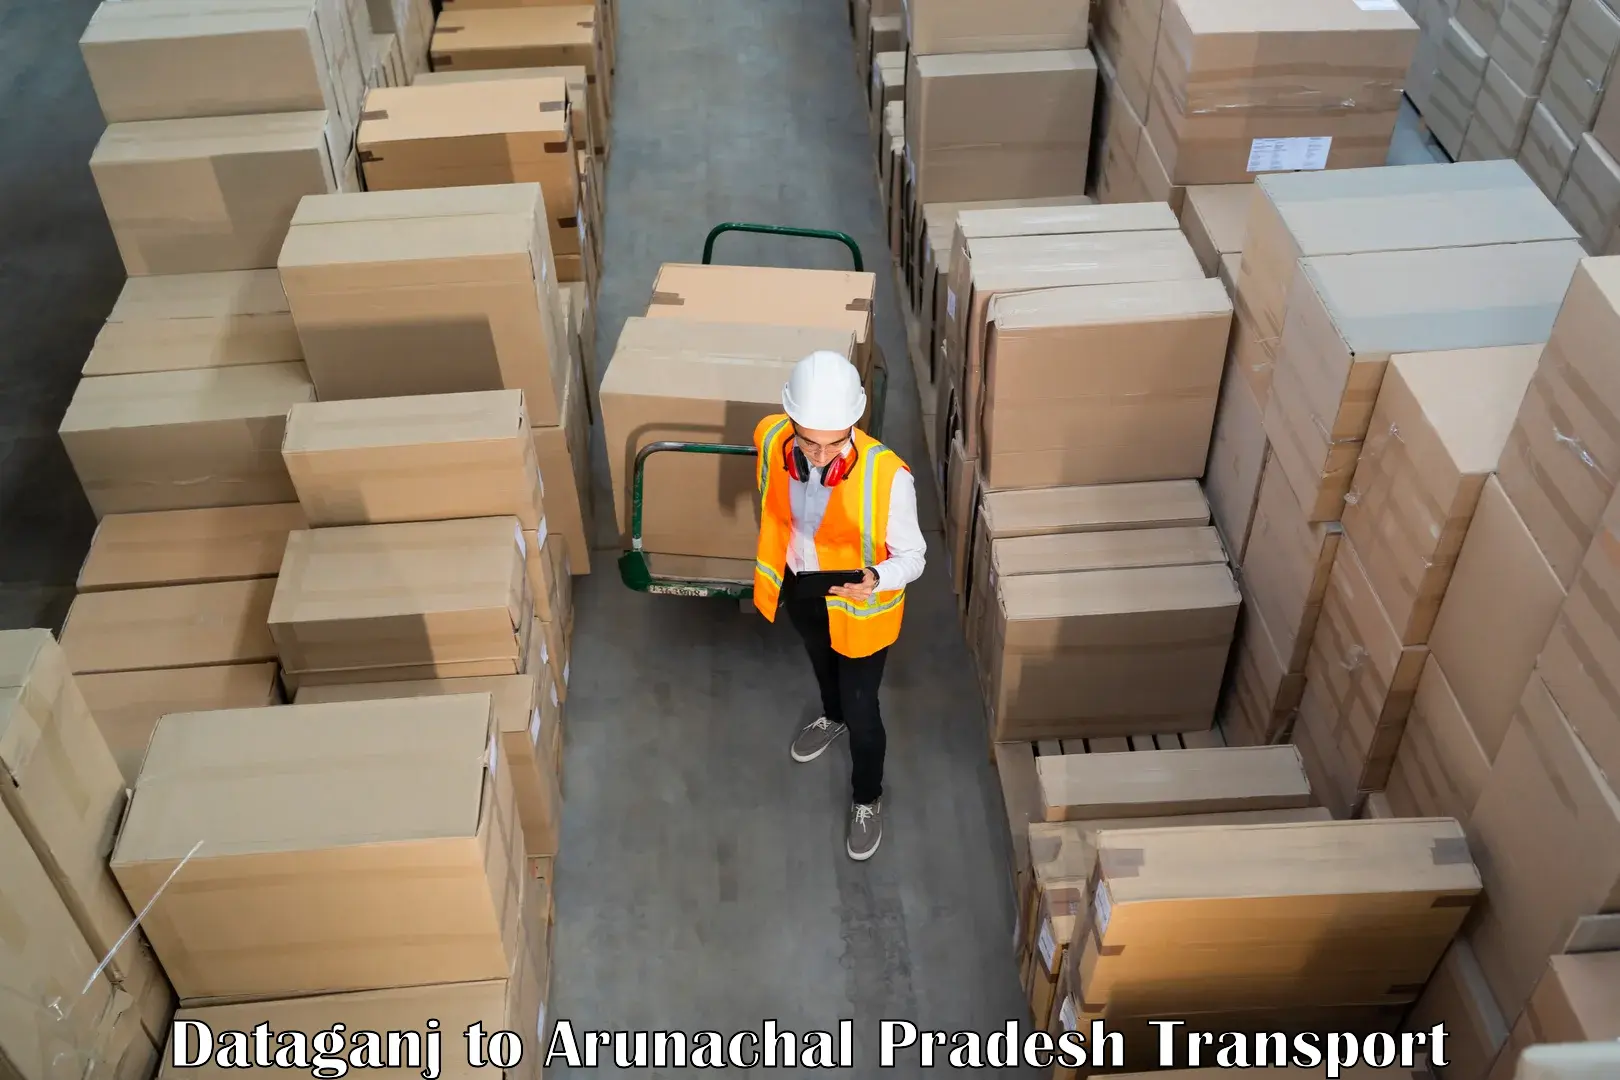 Furniture transport service Dataganj to Arunachal Pradesh